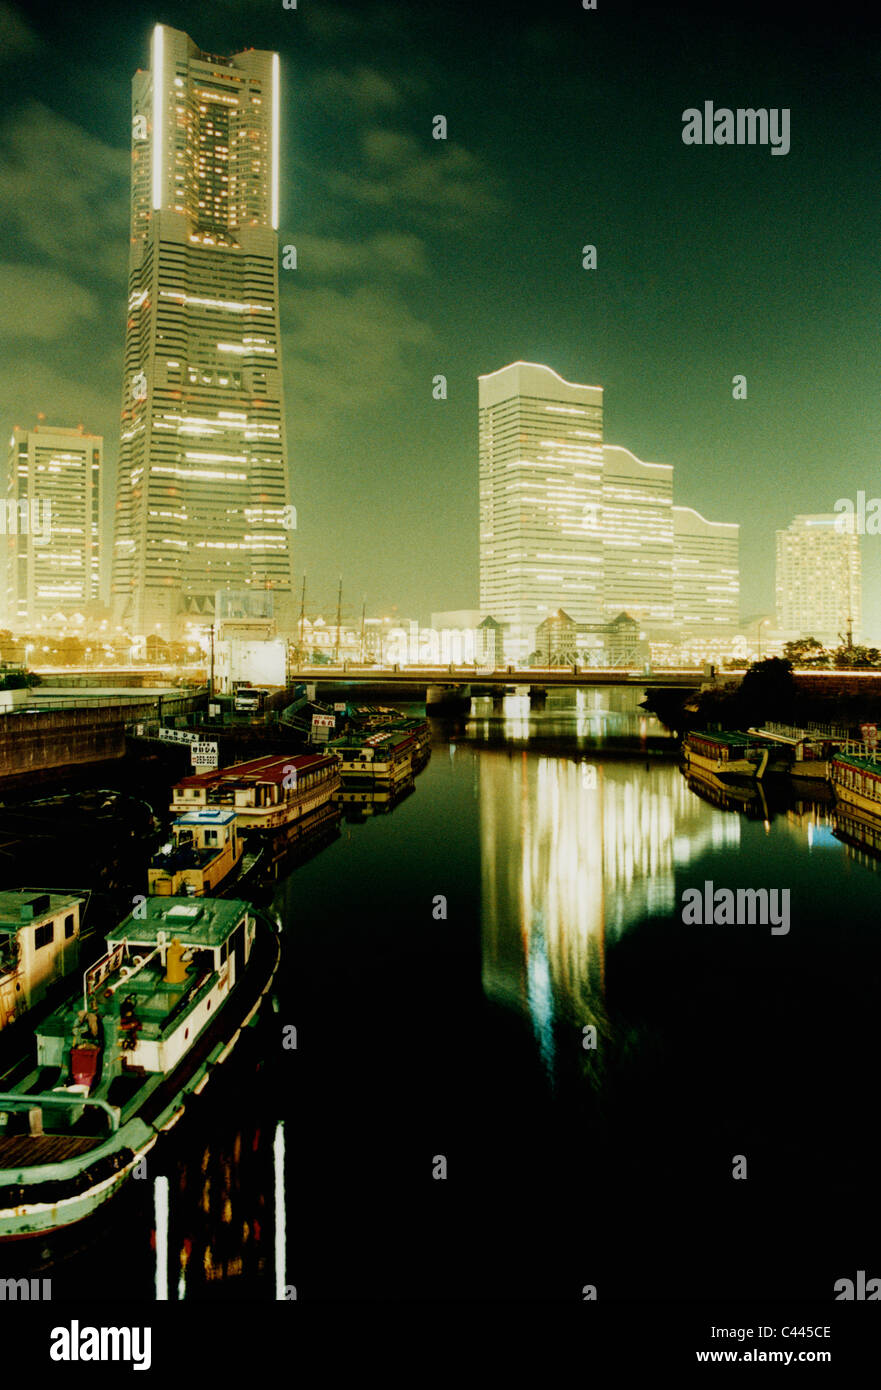 Harbor and cityscape at night, Yokohama, Japan Stock Photo